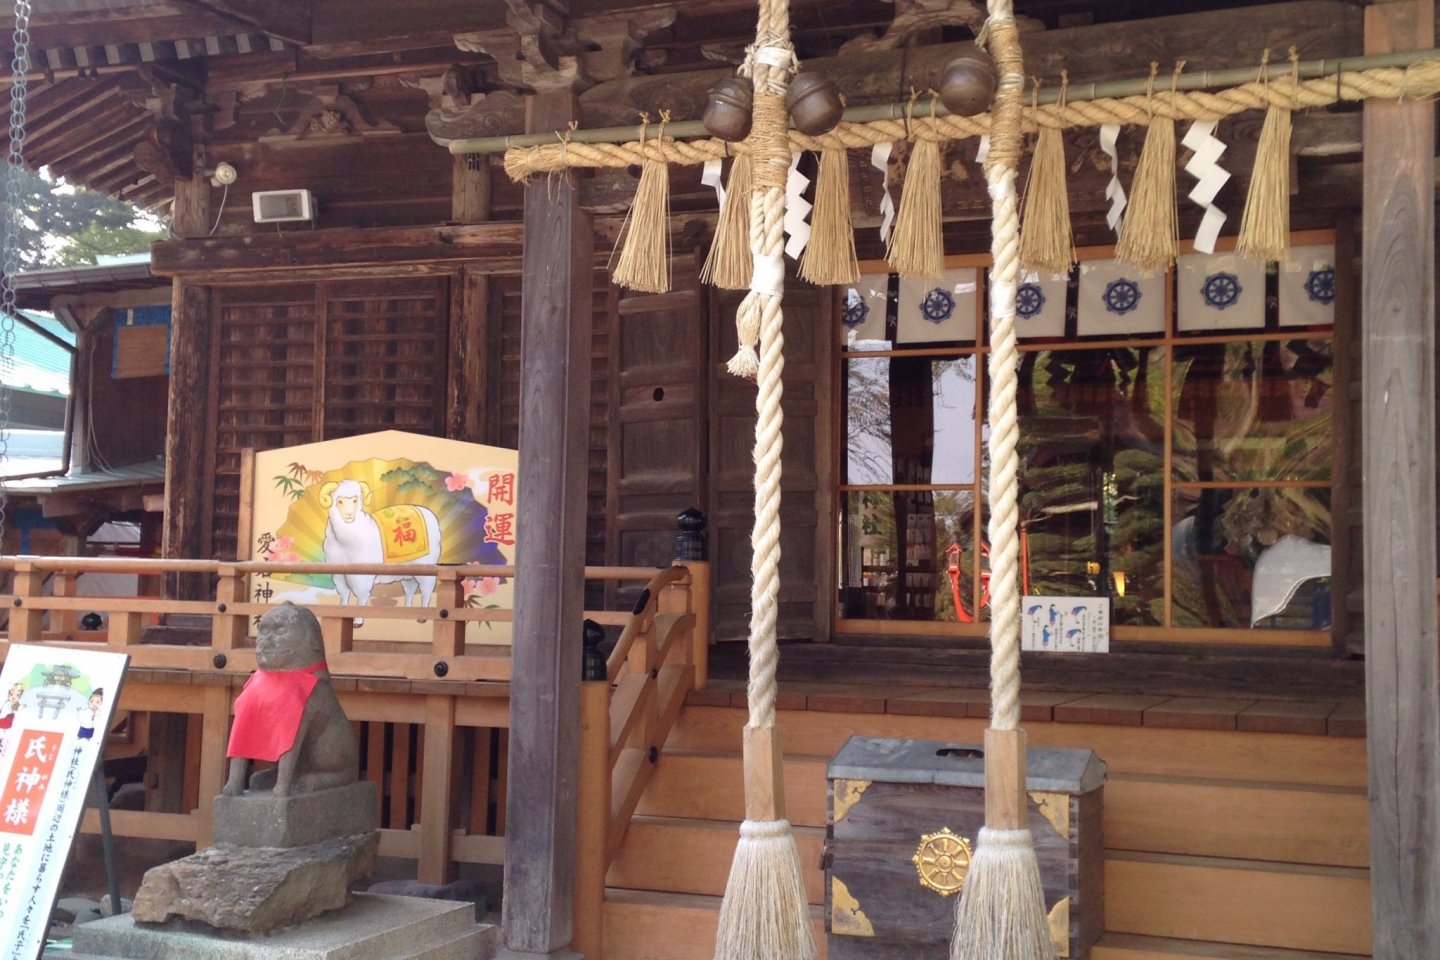 Kuil utama merupakan aset budaya berwujud kota Sendai